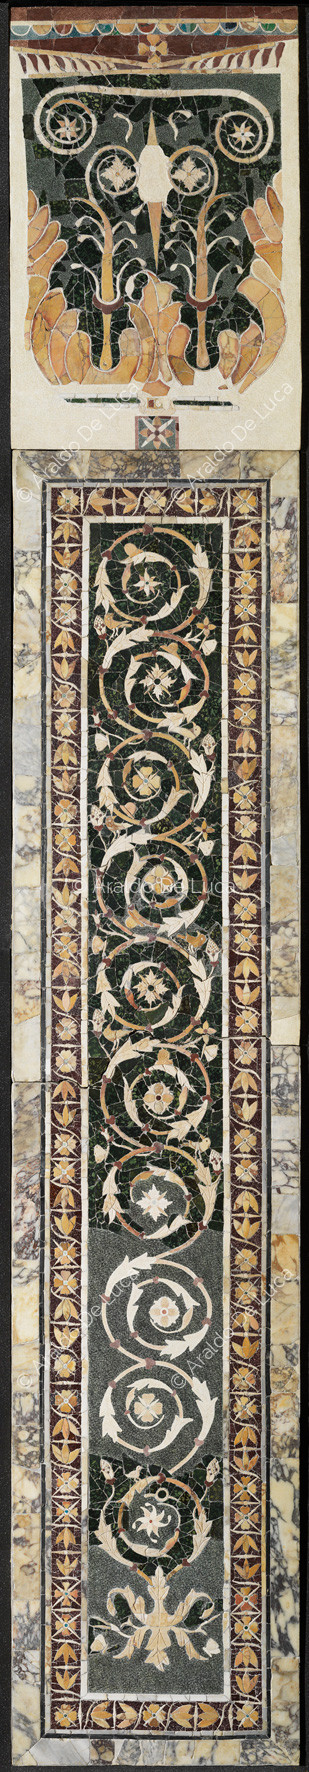 Pilaster mit blumenzweig und rand von lotusblumen - Opus Sectile in Porta Marina, besonder